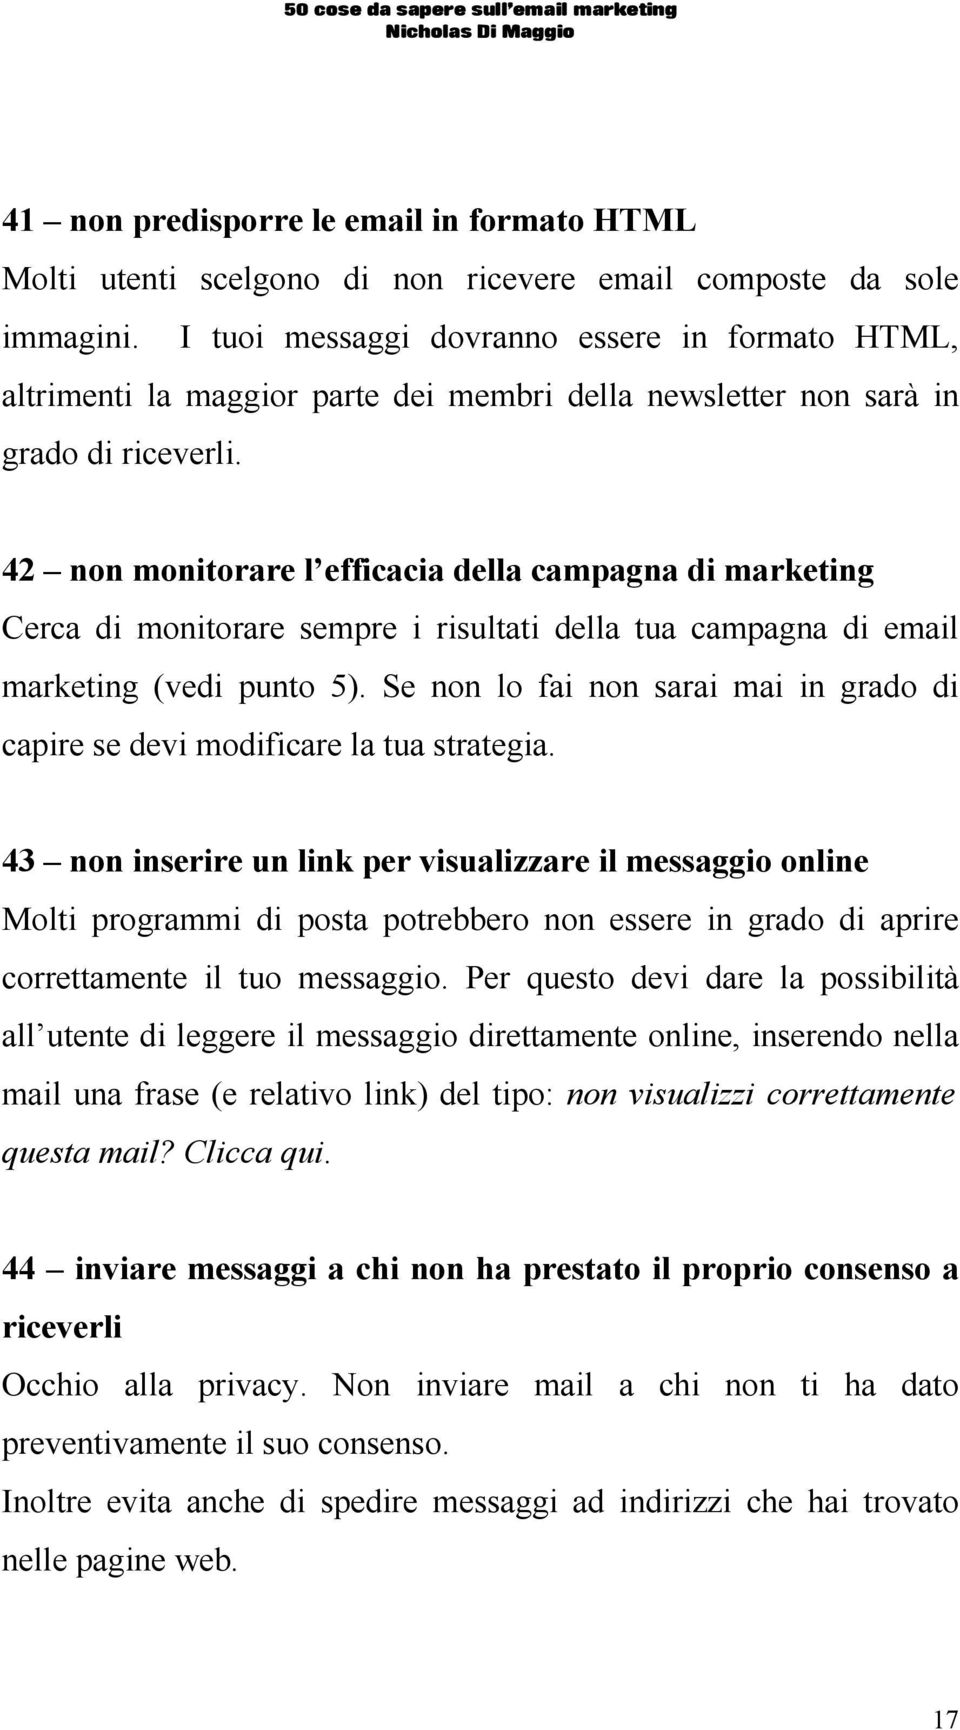 42 non monitorare l efficacia della campagna di marketing Cerca di monitorare sempre i risultati della tua campagna di email marketing (vedi punto 5).